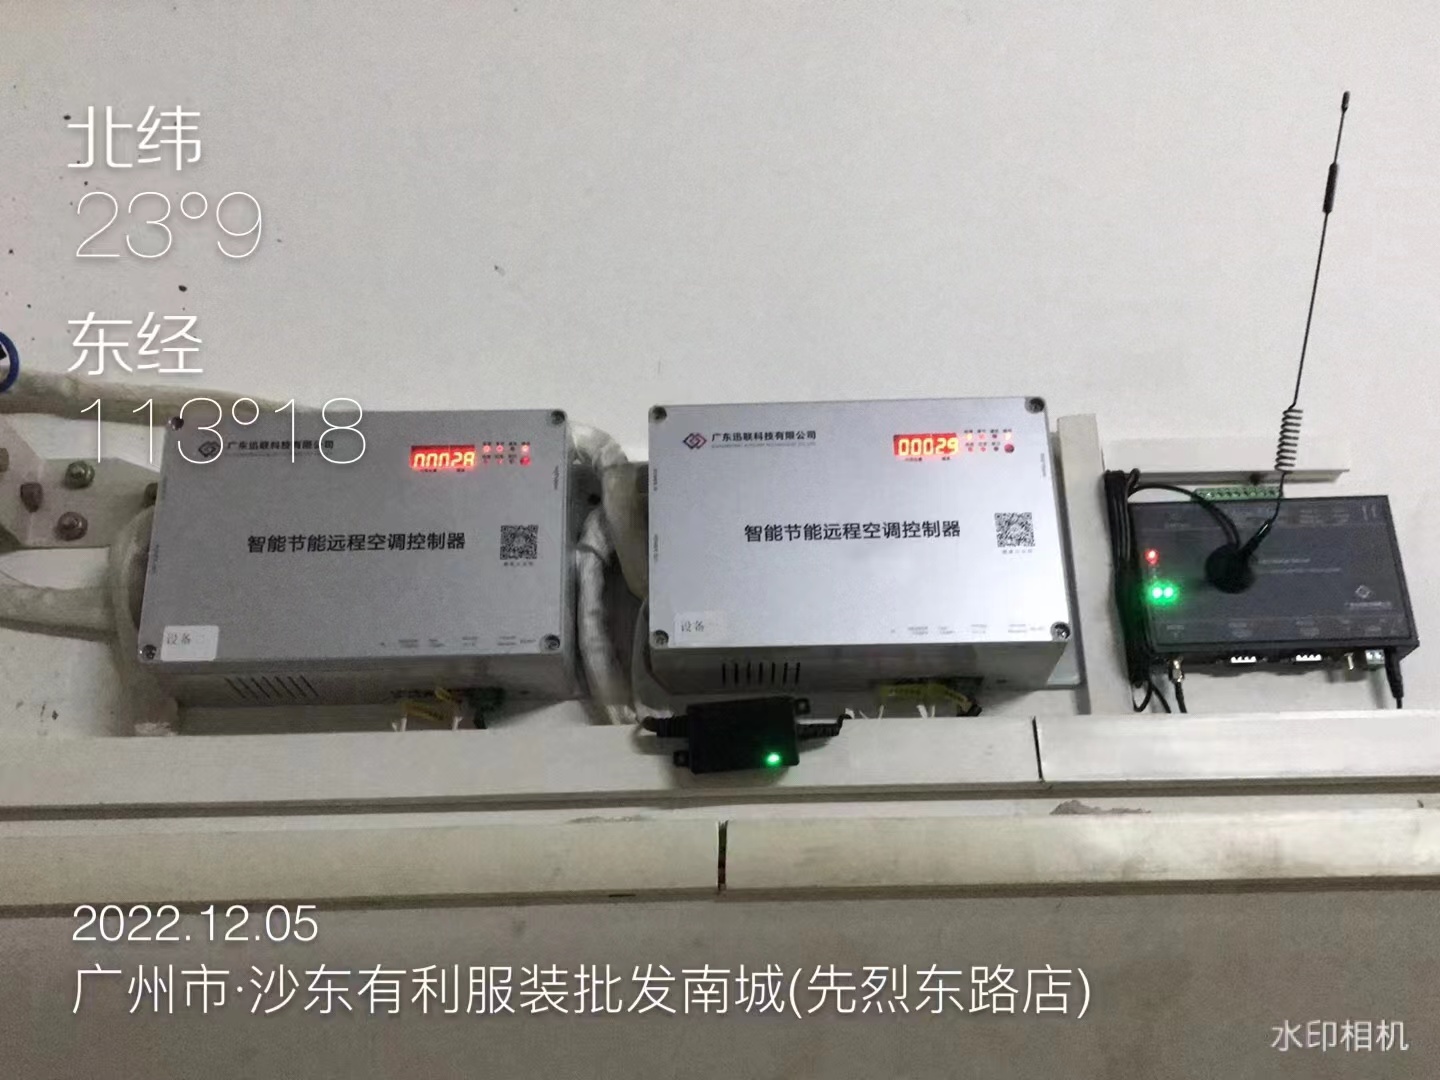 广东电信机房空调智能远程控制系统成功上线